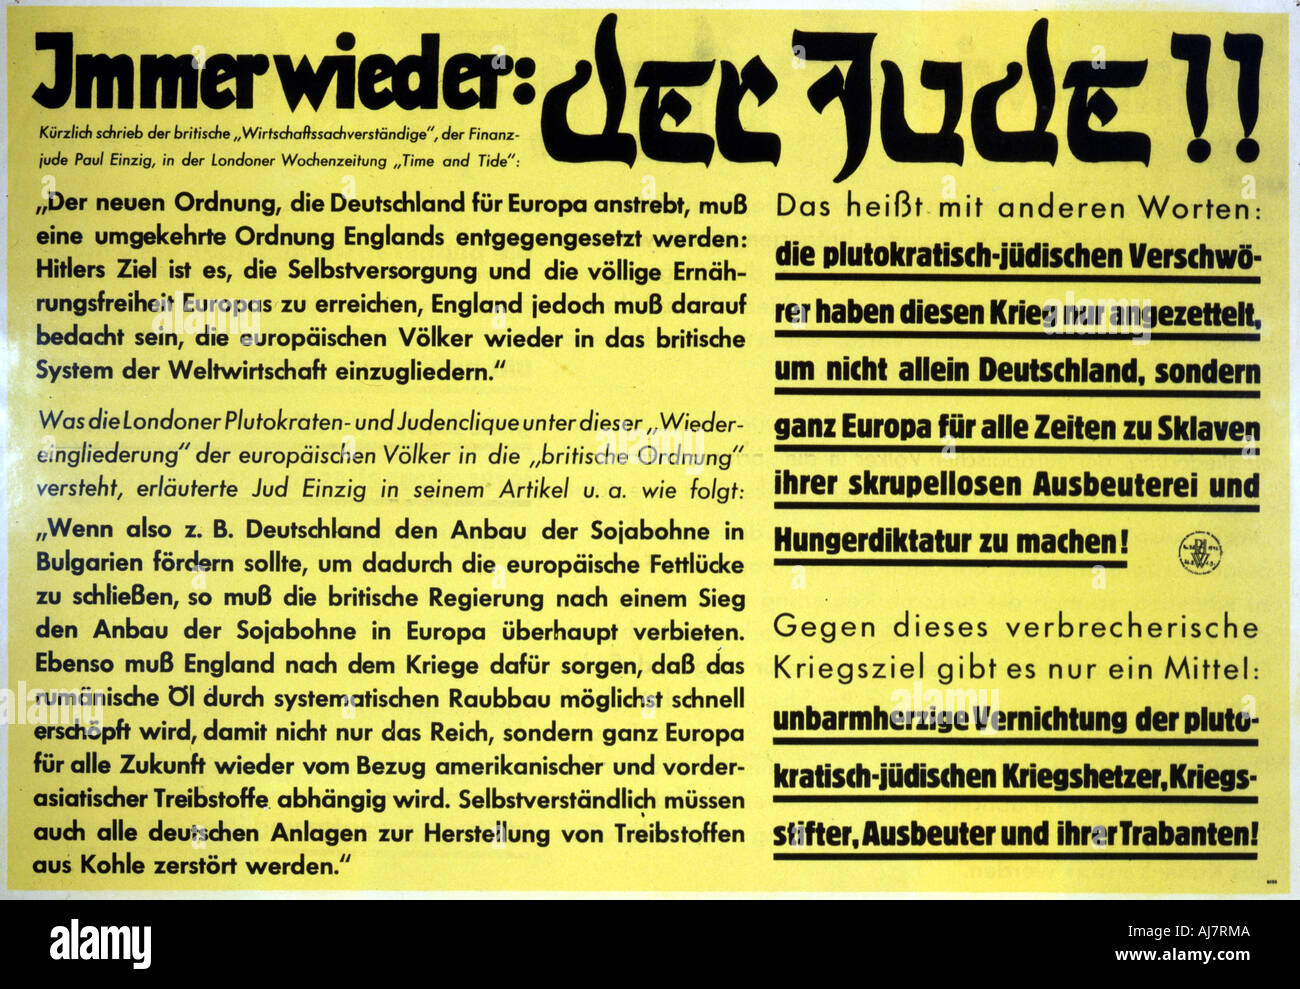 "Noch einmal: der Jude!!", Deutschen antisemitische Propaganda Flugblatt, c 1933-1945. Artist: Unbekannt Stockfoto